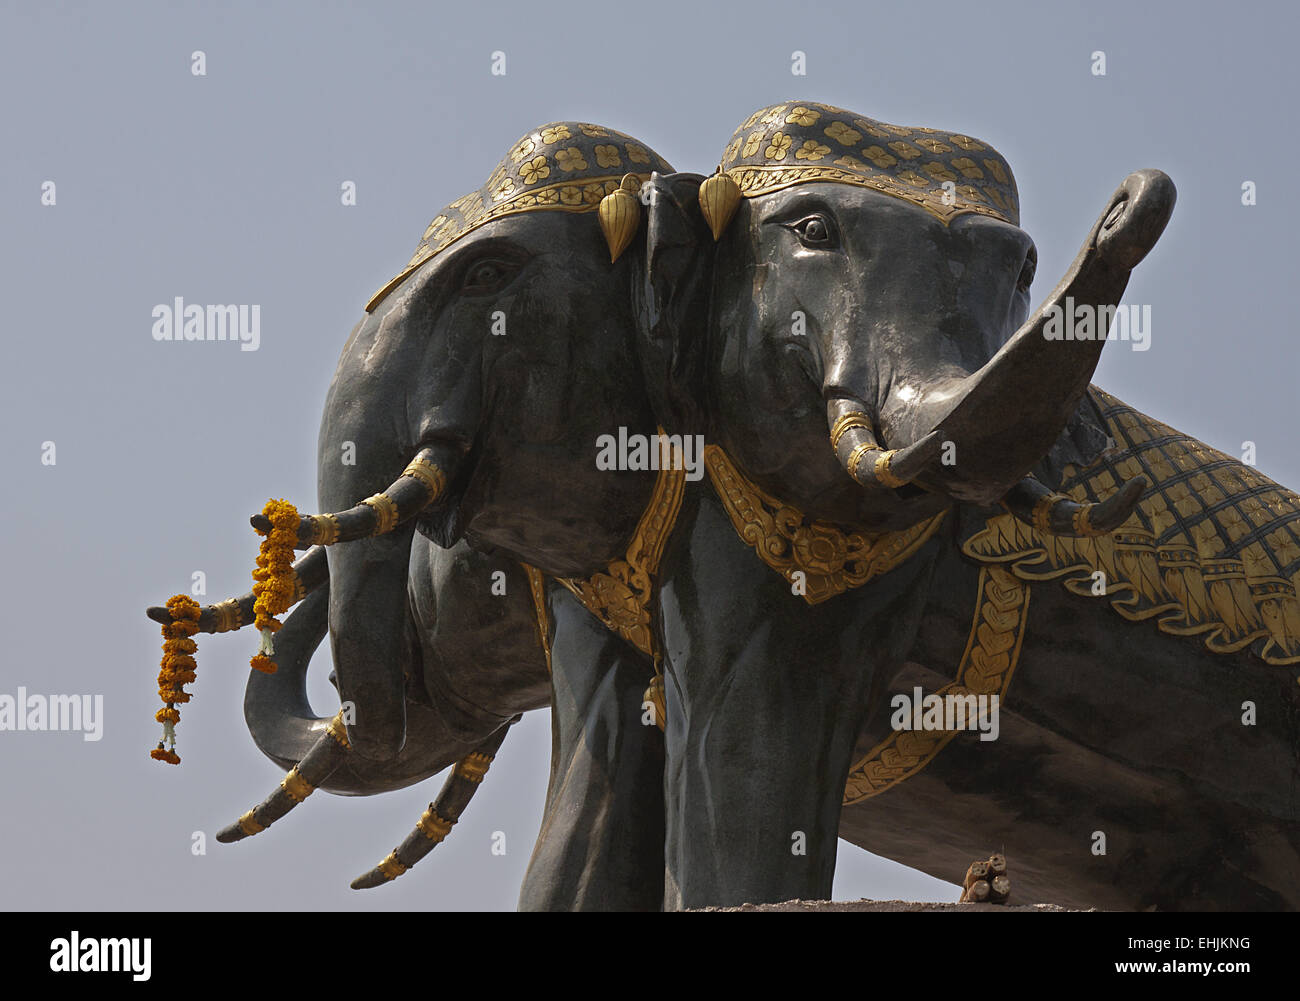 Elephant statue Stock Photo